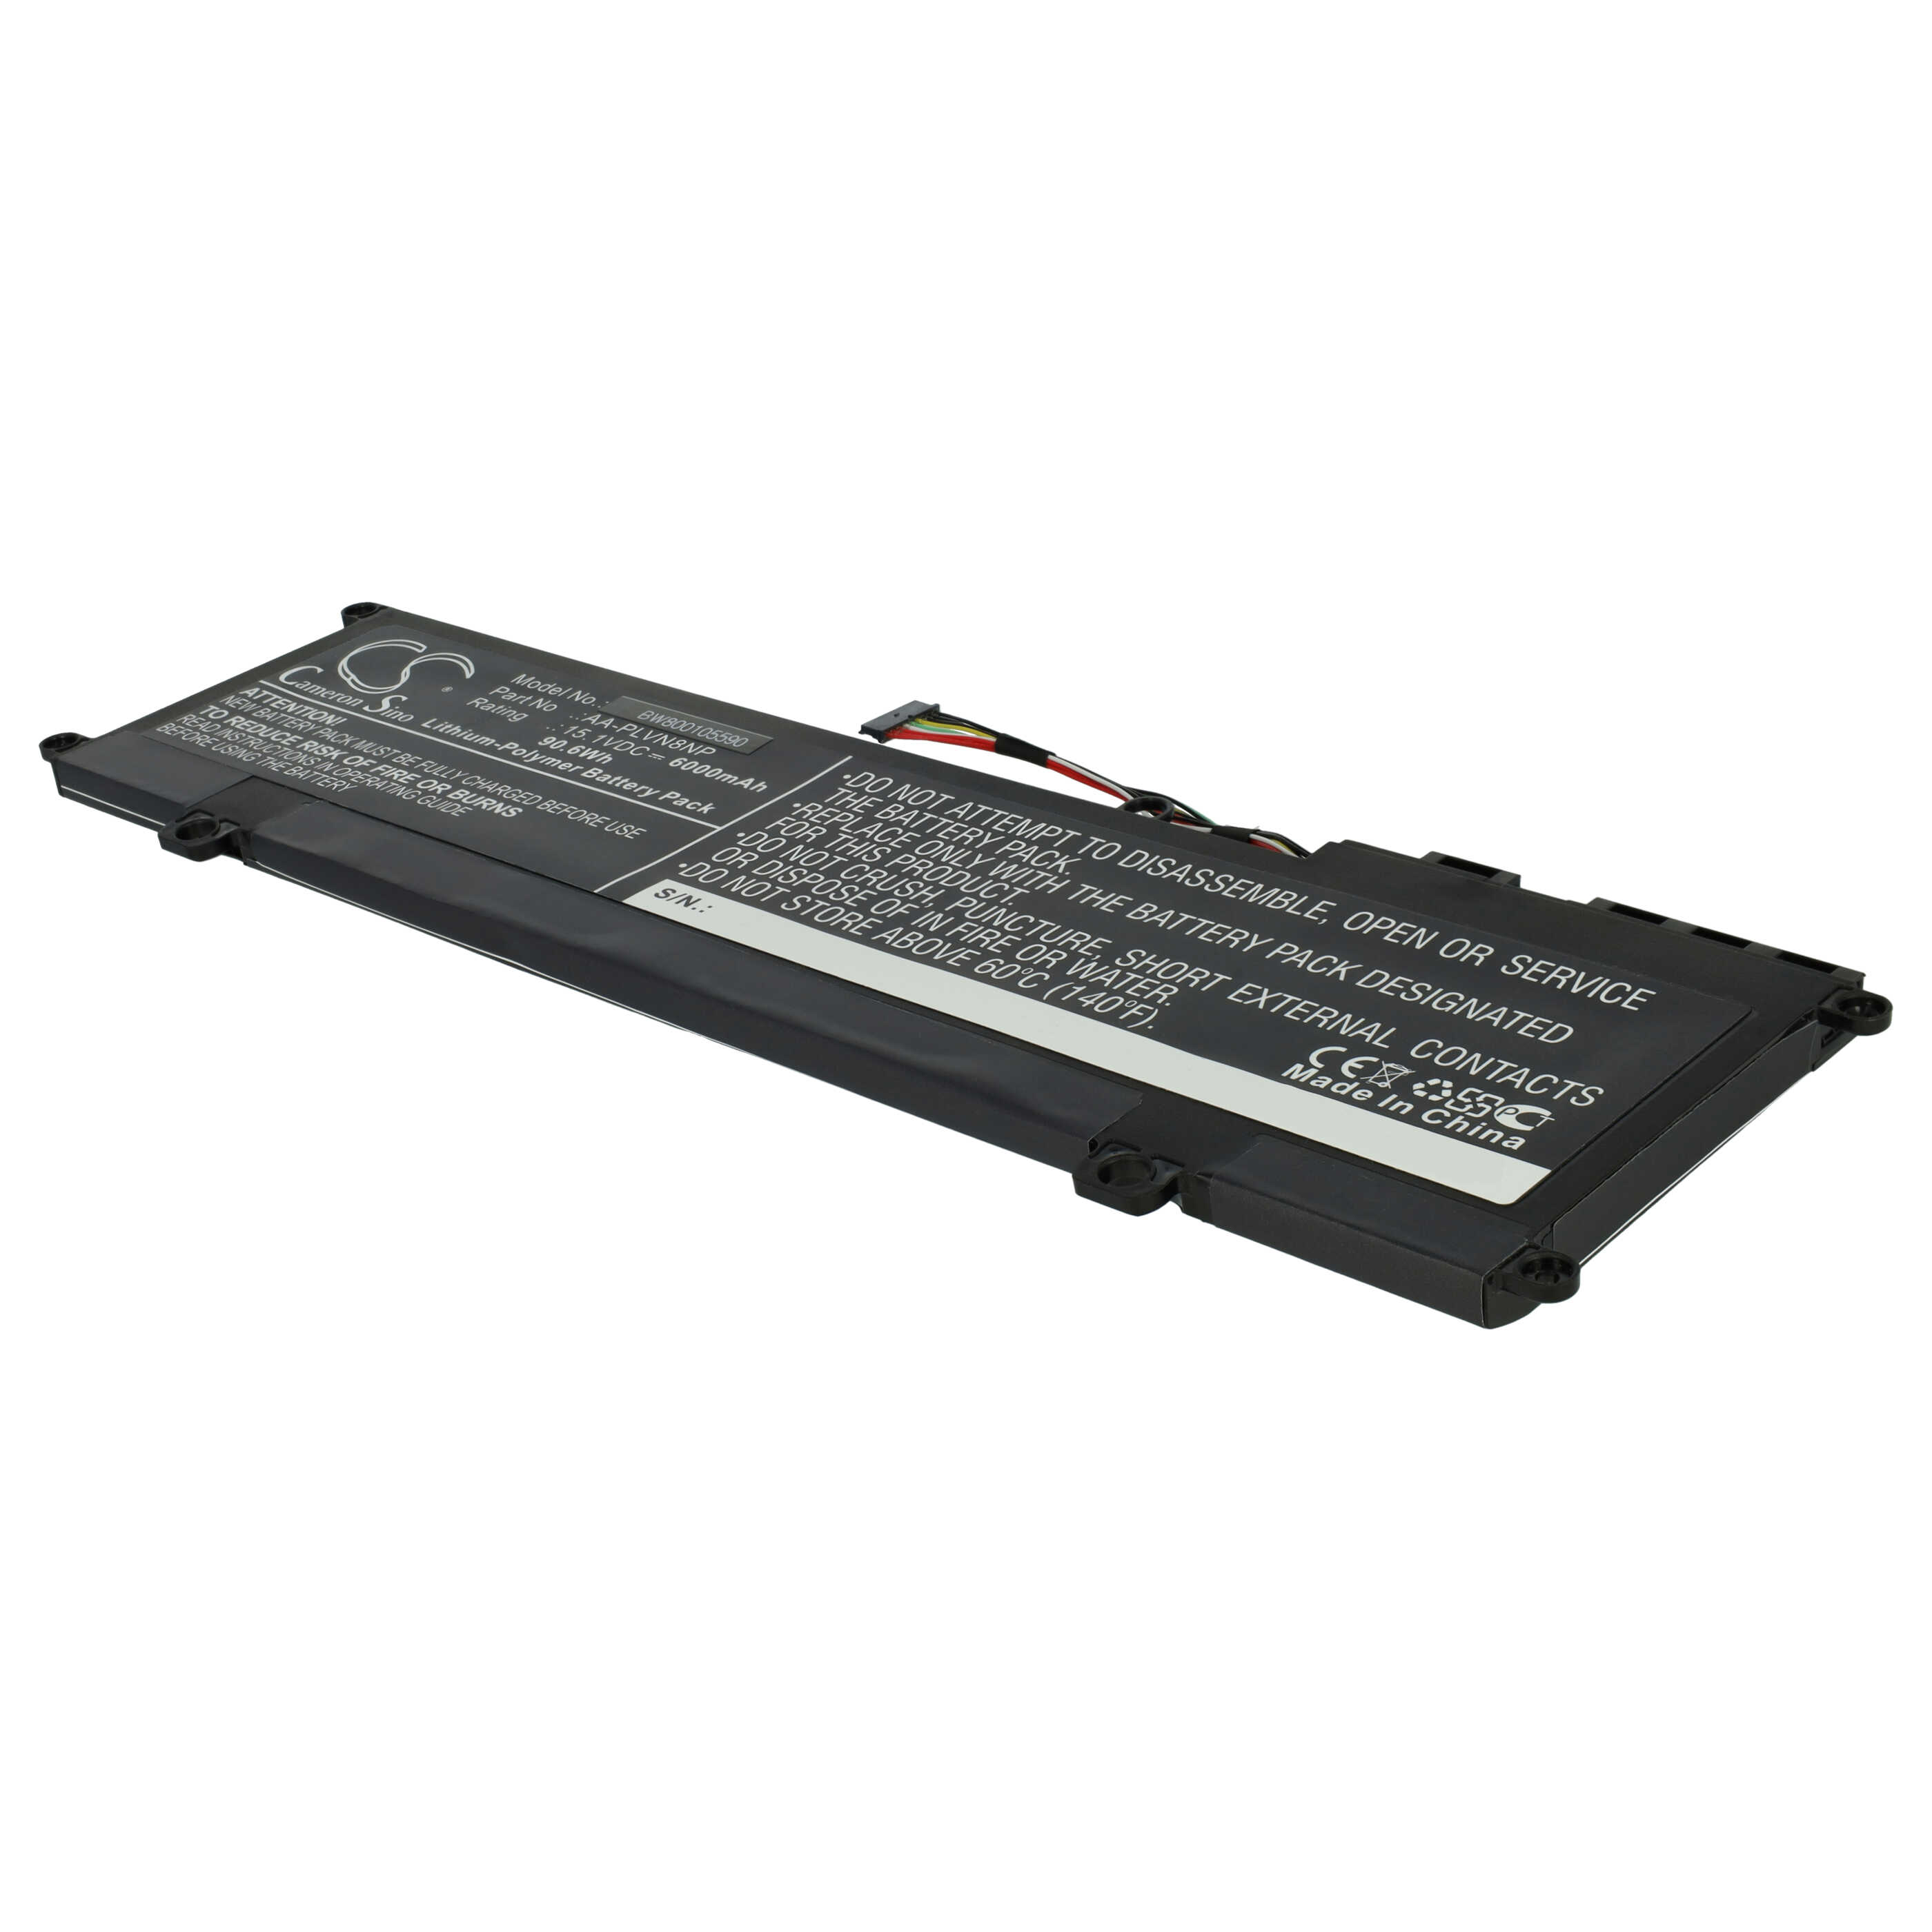 Batterie remplace Samsung AA-PLVN8NP, BA43-00359A pour ordinateur portable - 6000mAh 15,1V Li-polymère, noir